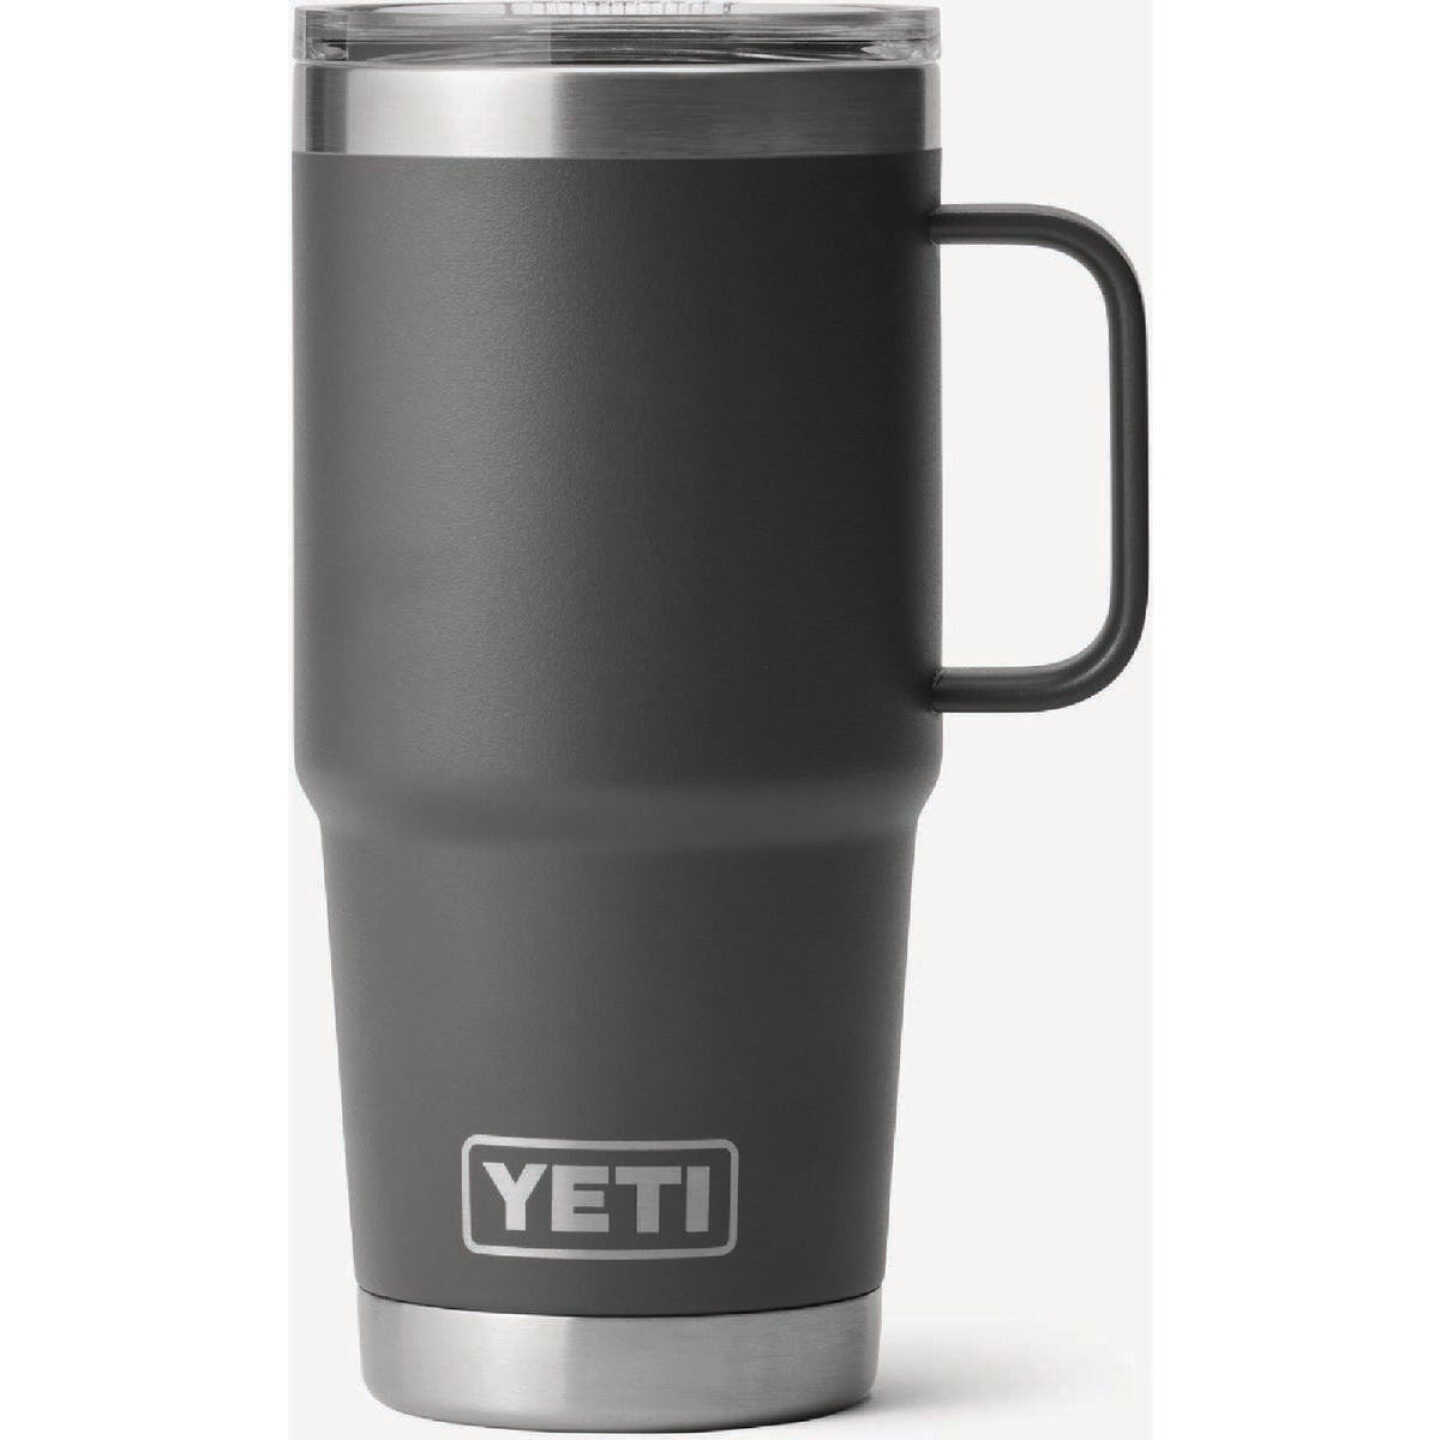 Yeti 14 oz Rambler Mug with Magslider Lid - Charcoal